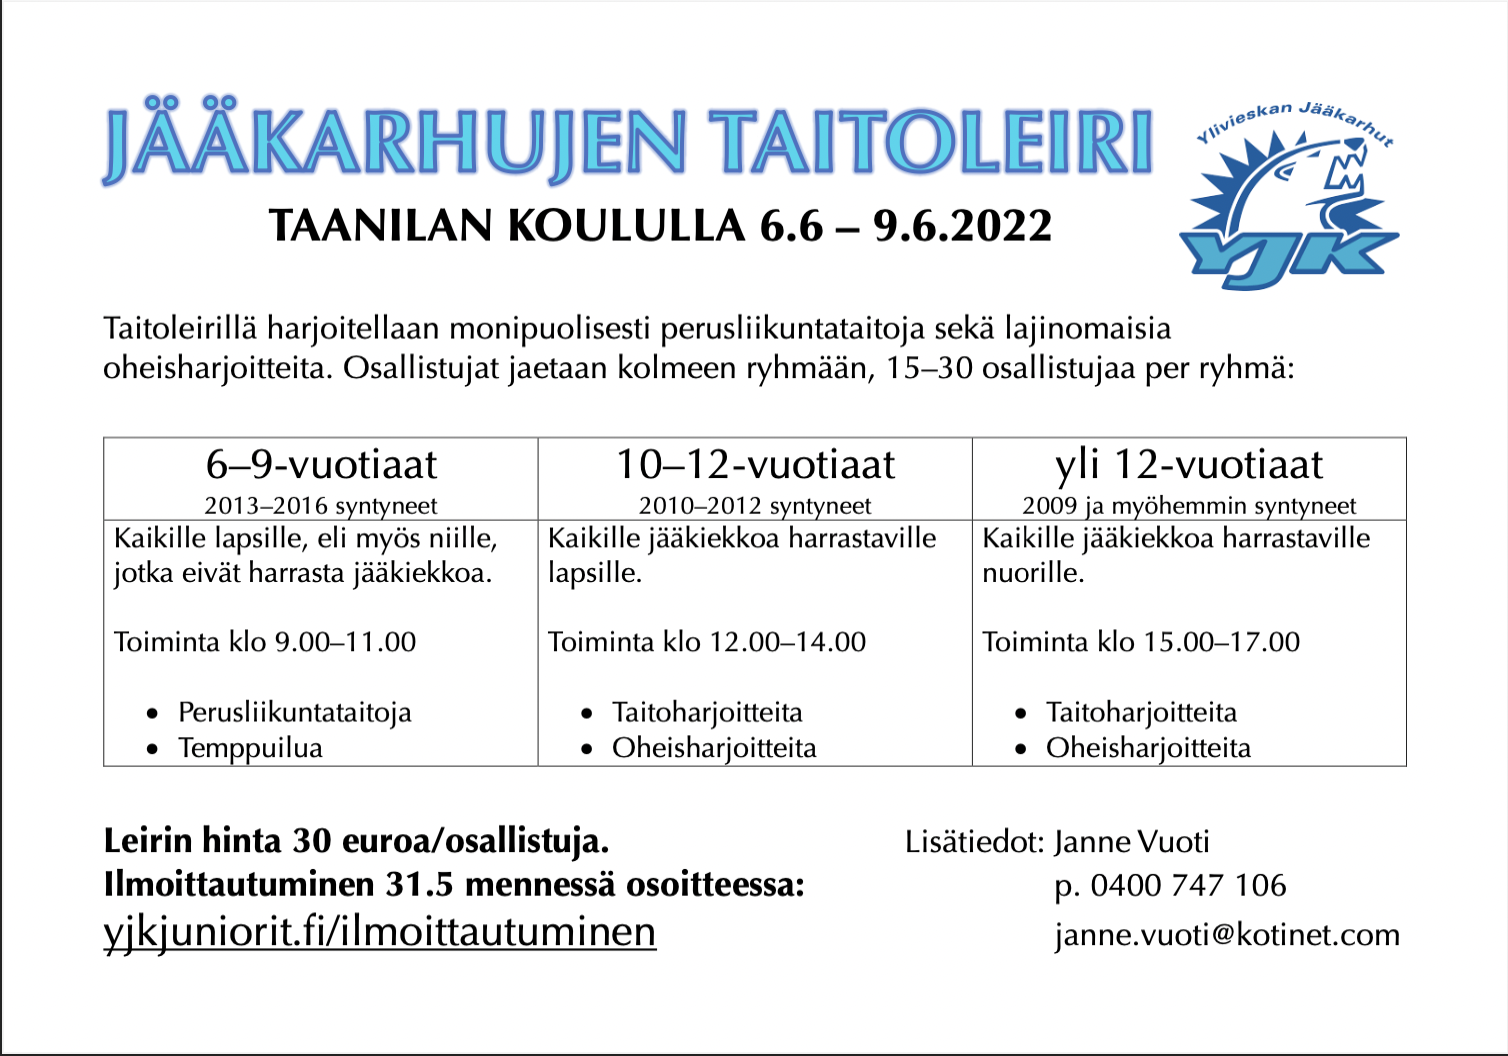 Jääkarhut järjestää taitoleirin 6.6–9.6.2022, tervetuloa mukaan!